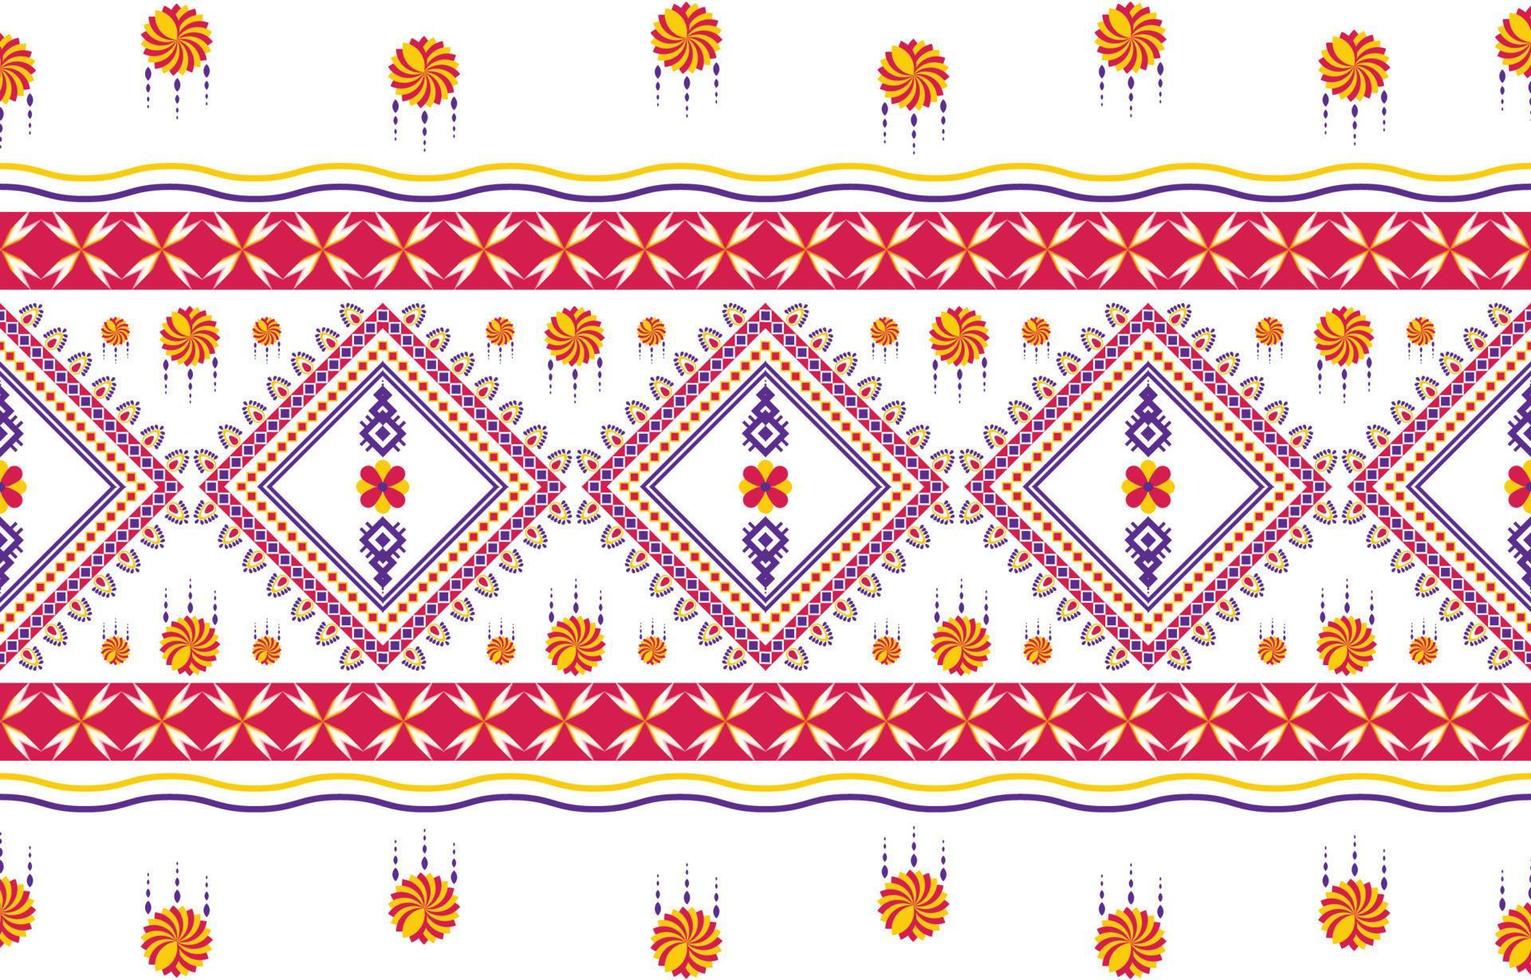 design tradicional padrão geométrico étnico oriental ikat sem costura para plano de fundo, tapete, papel de parede, roupas, embrulho, batik, tecido, ilustração vetorial. estilo bordado. vetor